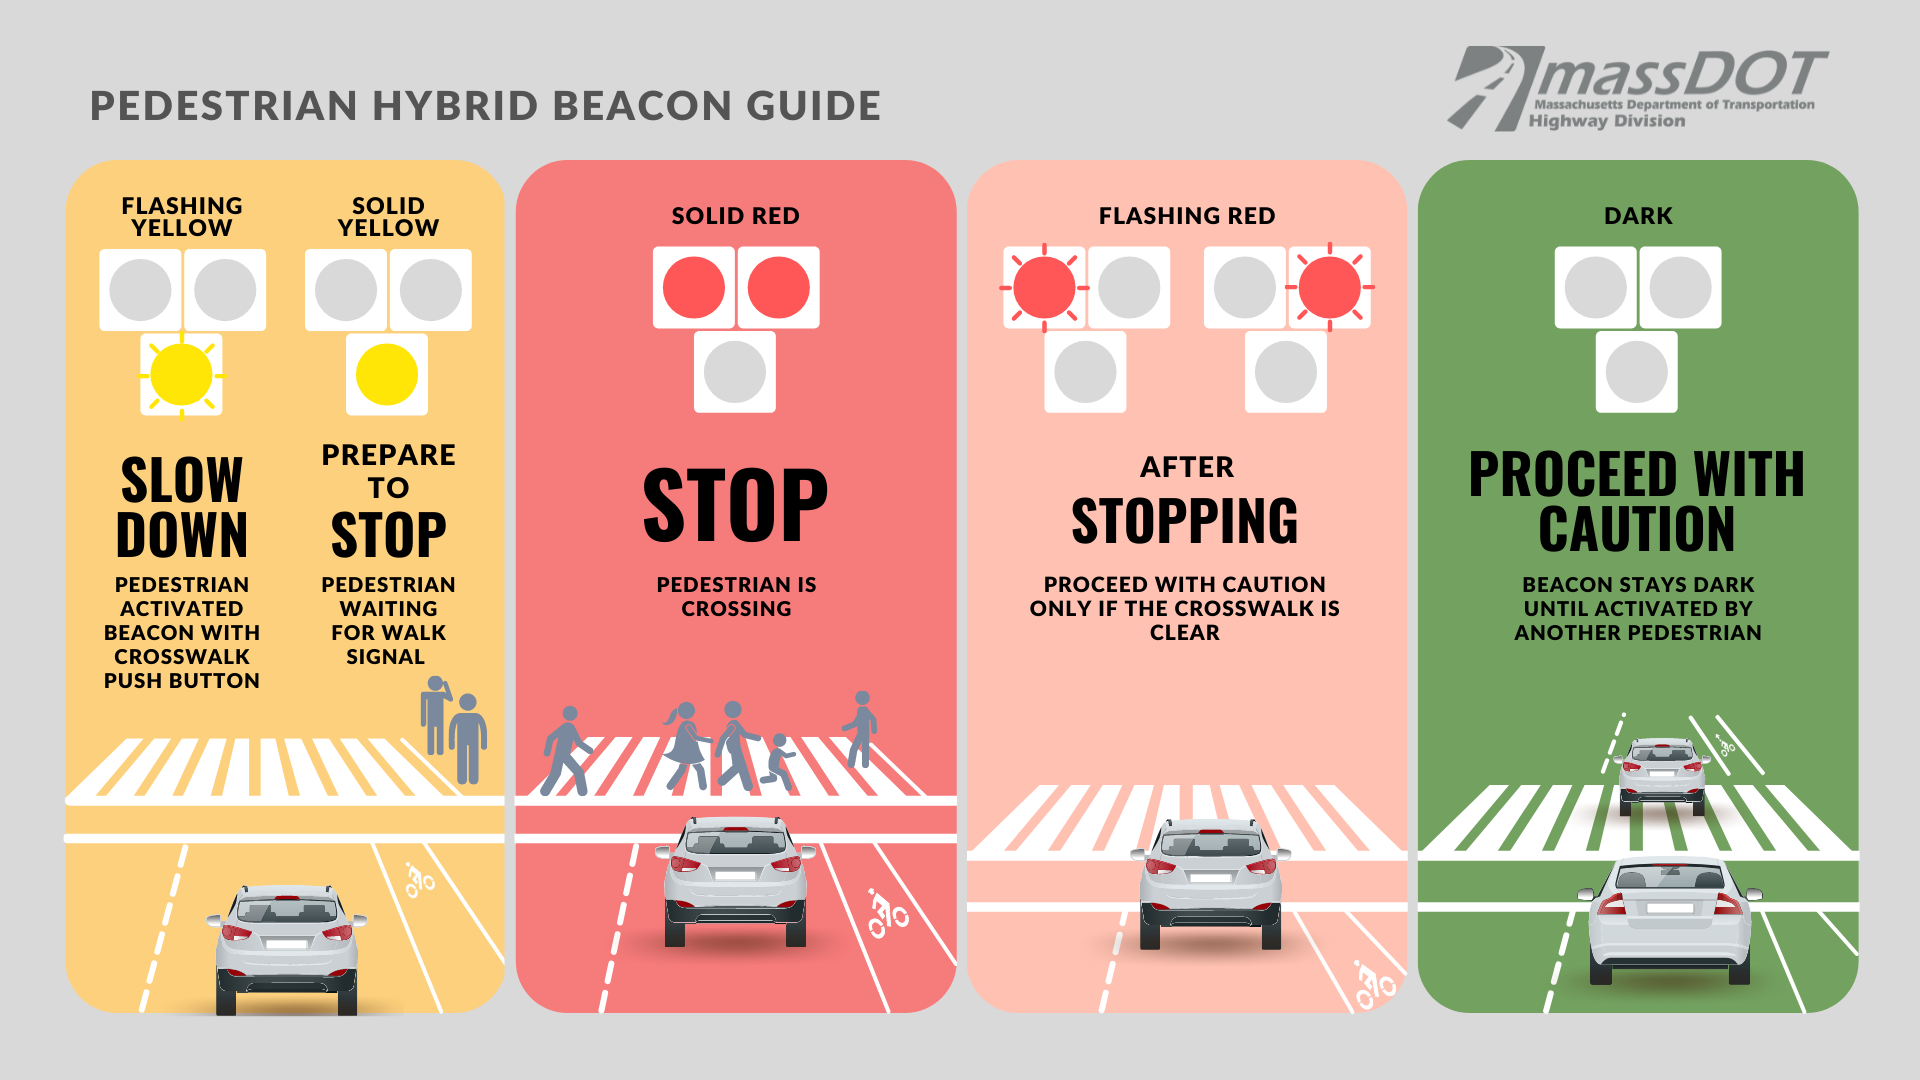 Video: What to do when you encounter a pedestrian hybrid beacon